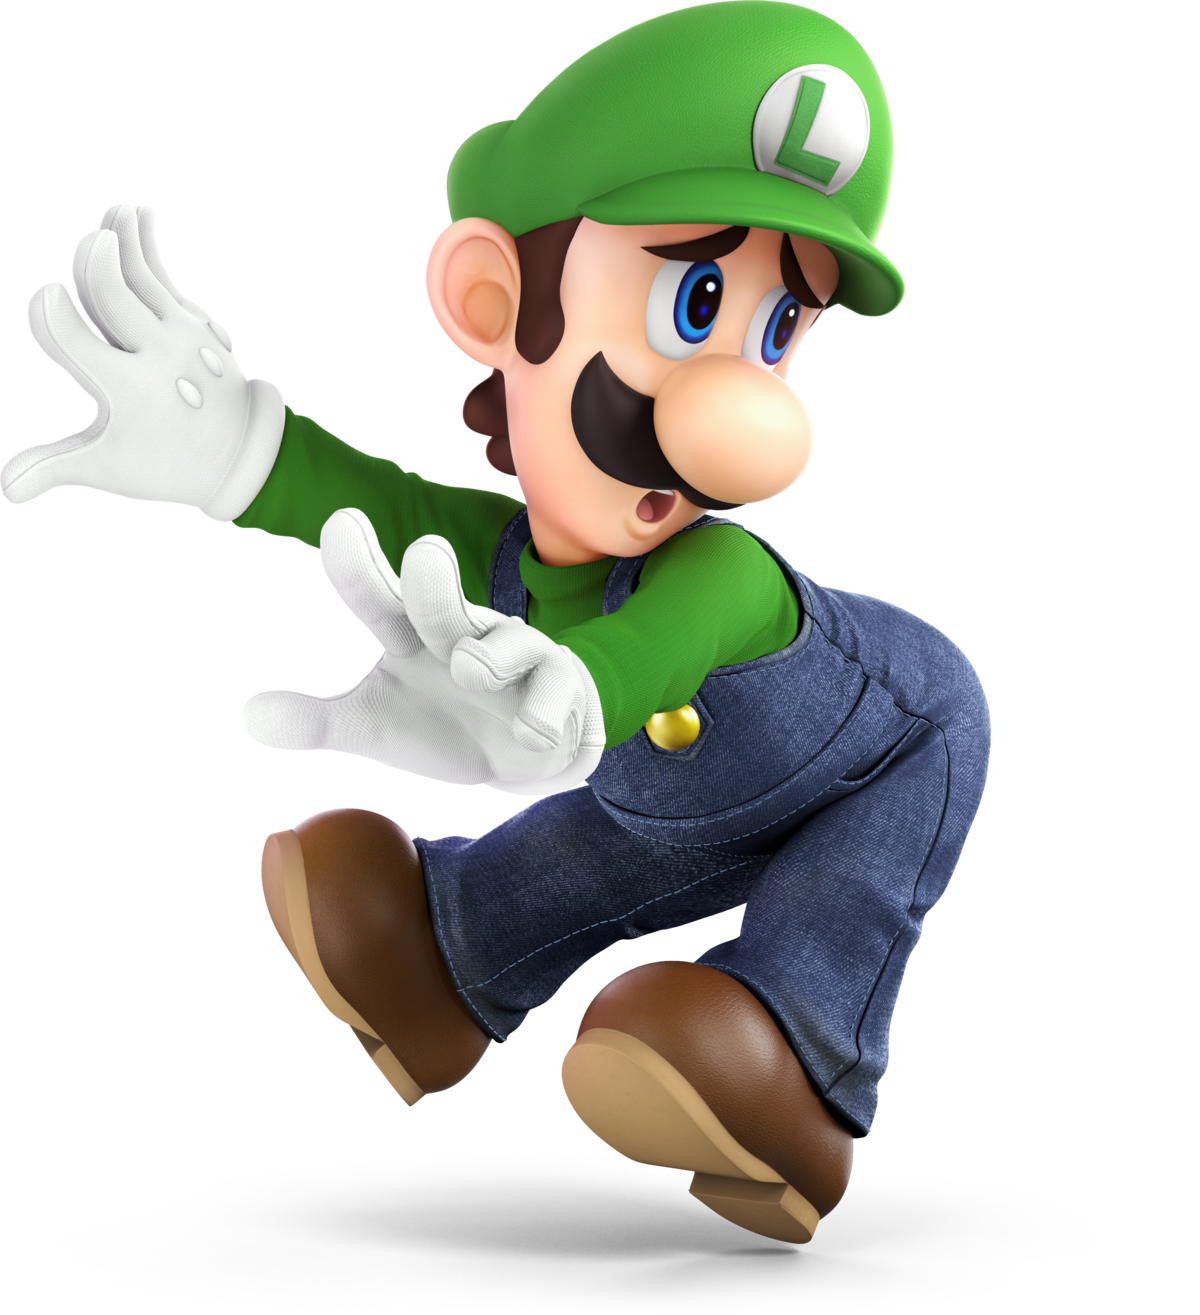 Luigi (personaggio) - Wikipedia